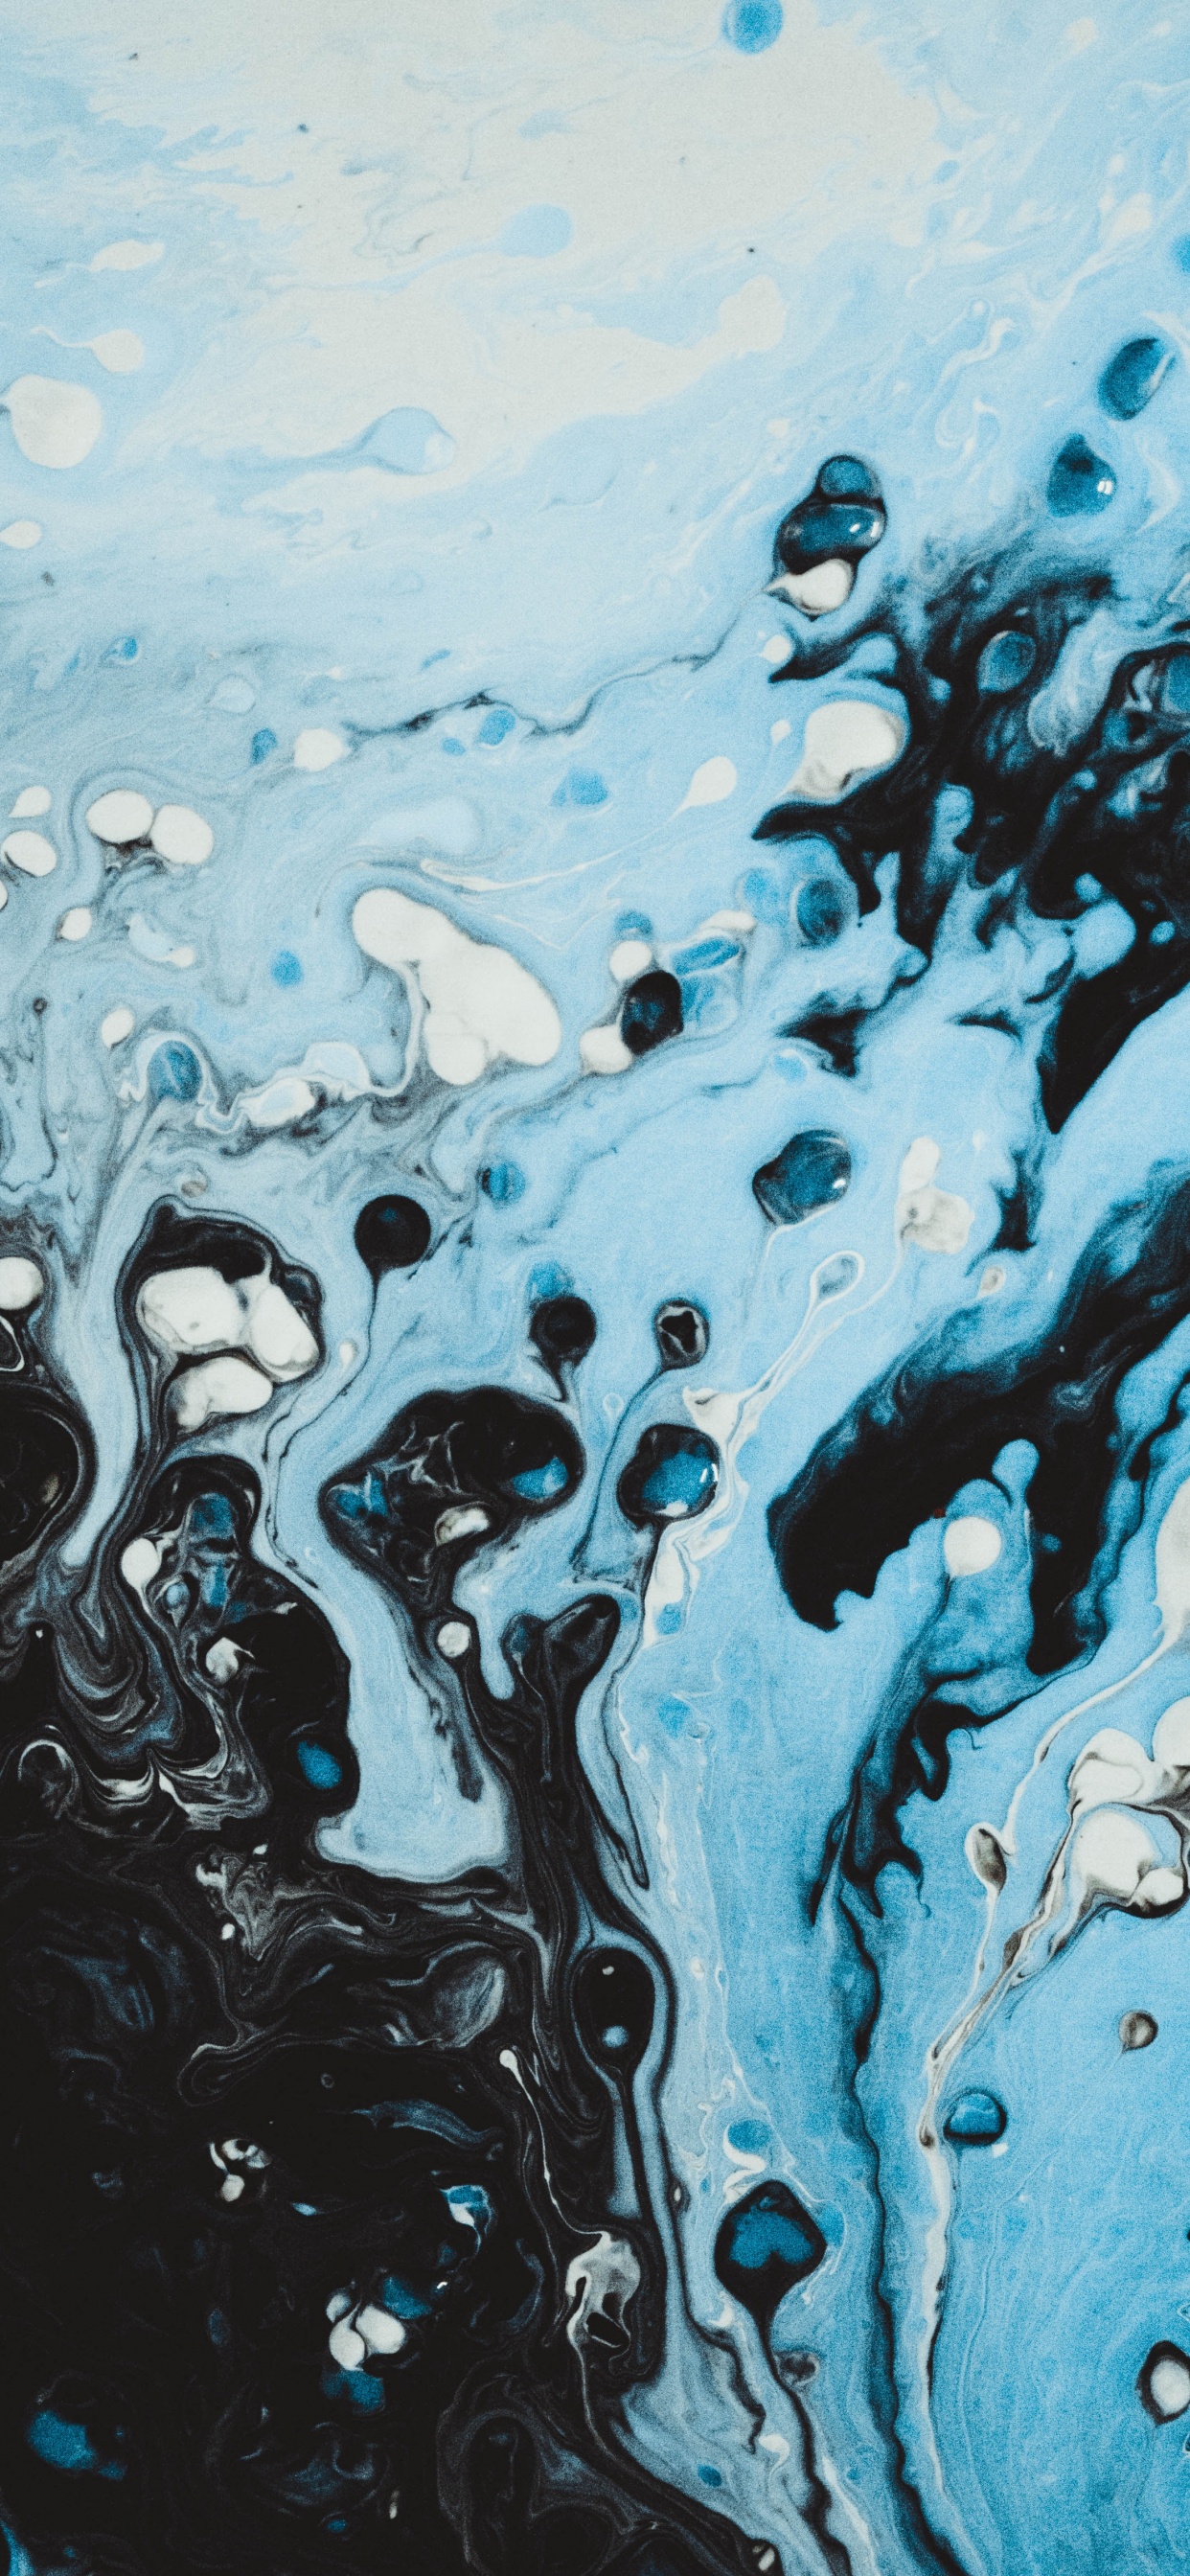 Blaue Und Weiße Wasserspritzer. Wallpaper in 1242x2688 Resolution